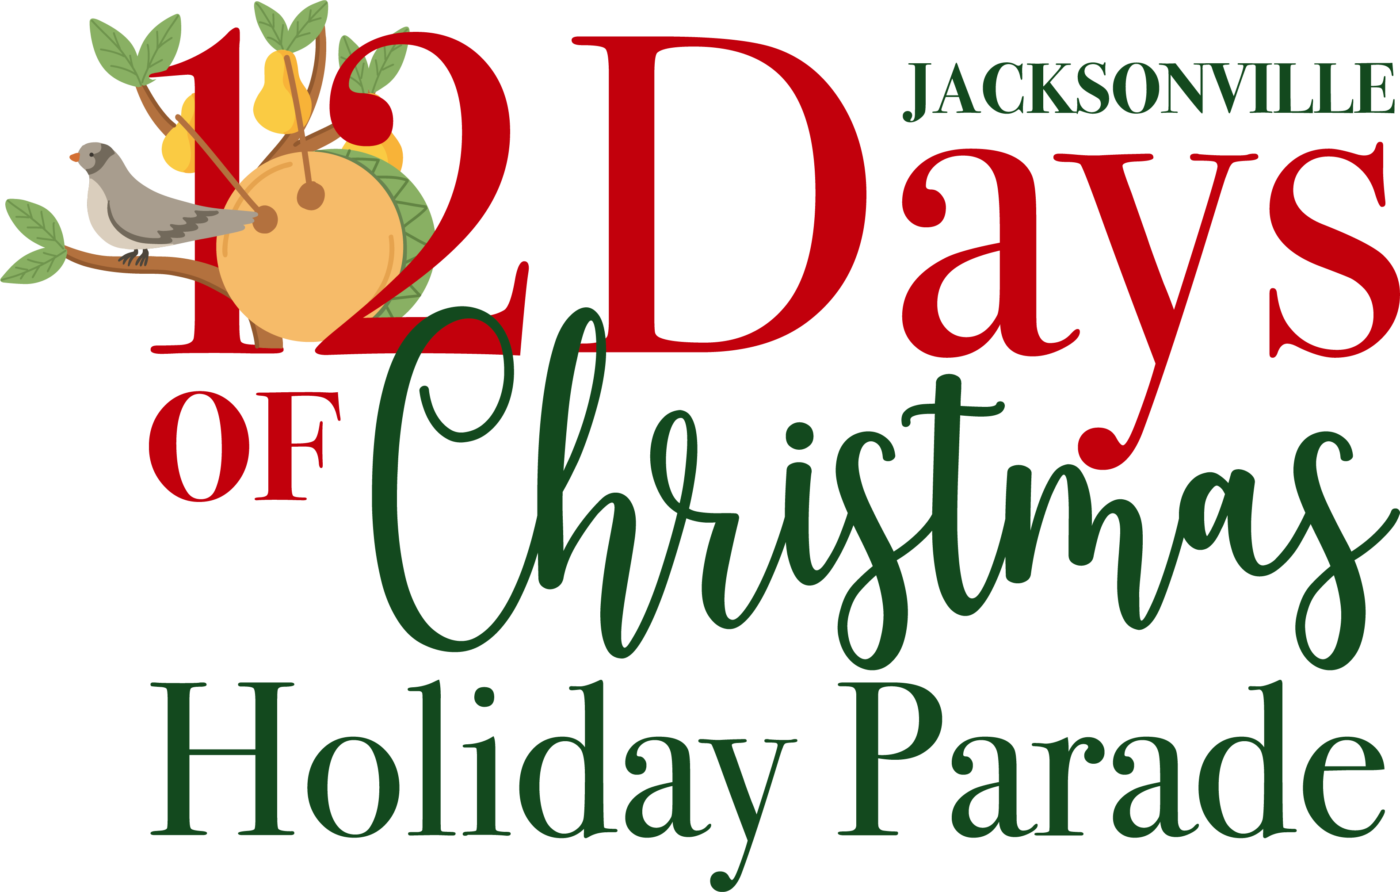 Parade Theme: 12 Days of Christmas